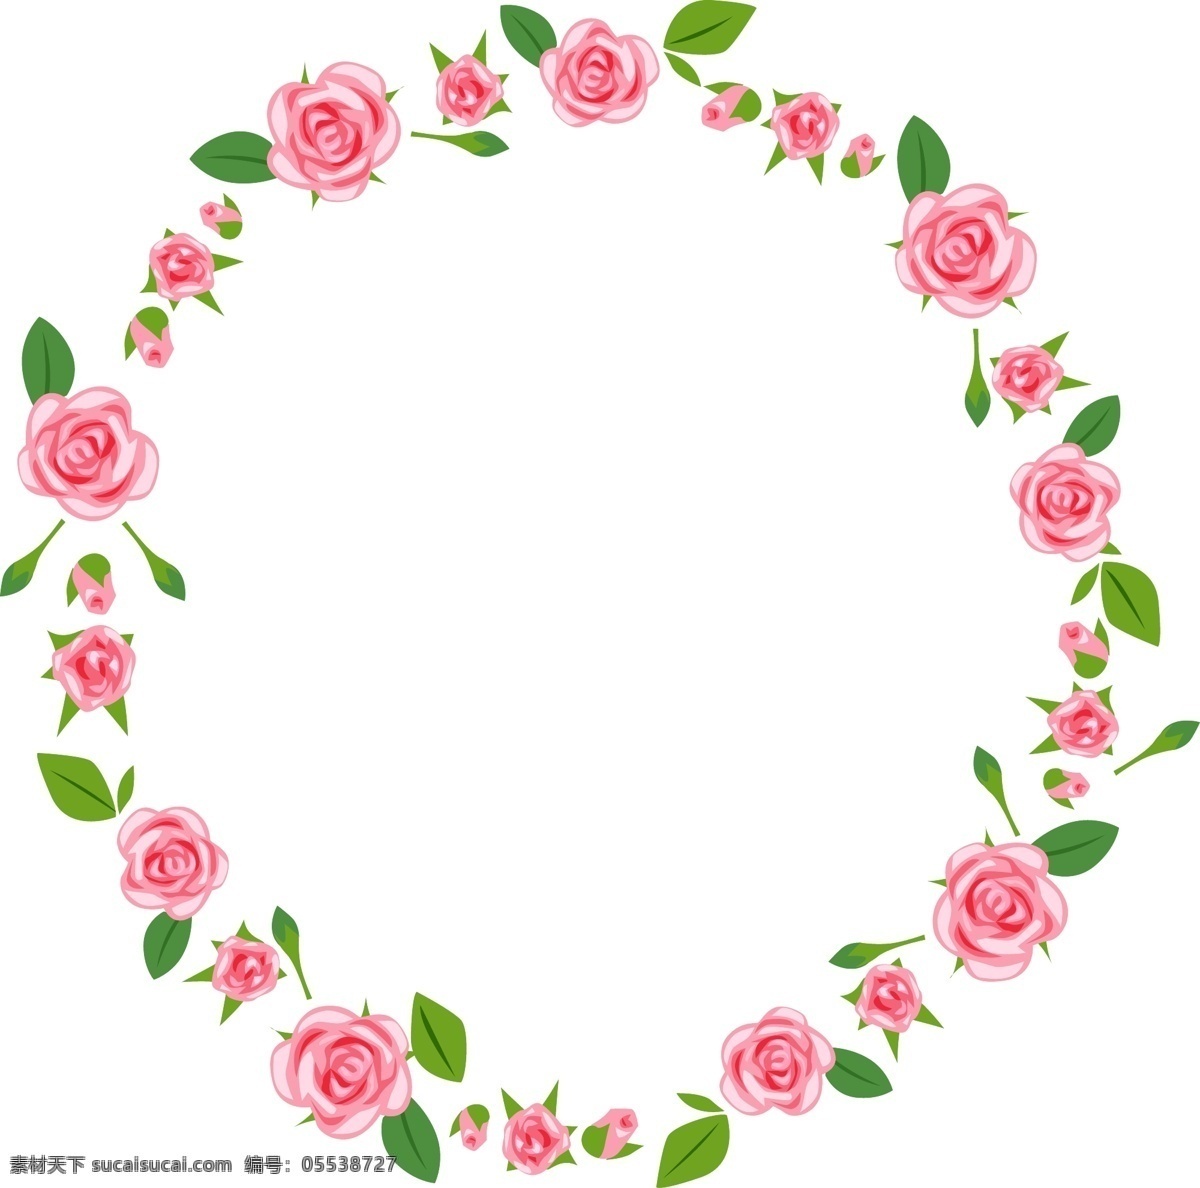 圆 型 粉色 玫瑰 花环 圆形花环 粉色玫瑰花 矢量玫瑰 玫瑰花环 矢量花纹 底纹边框 花边花纹